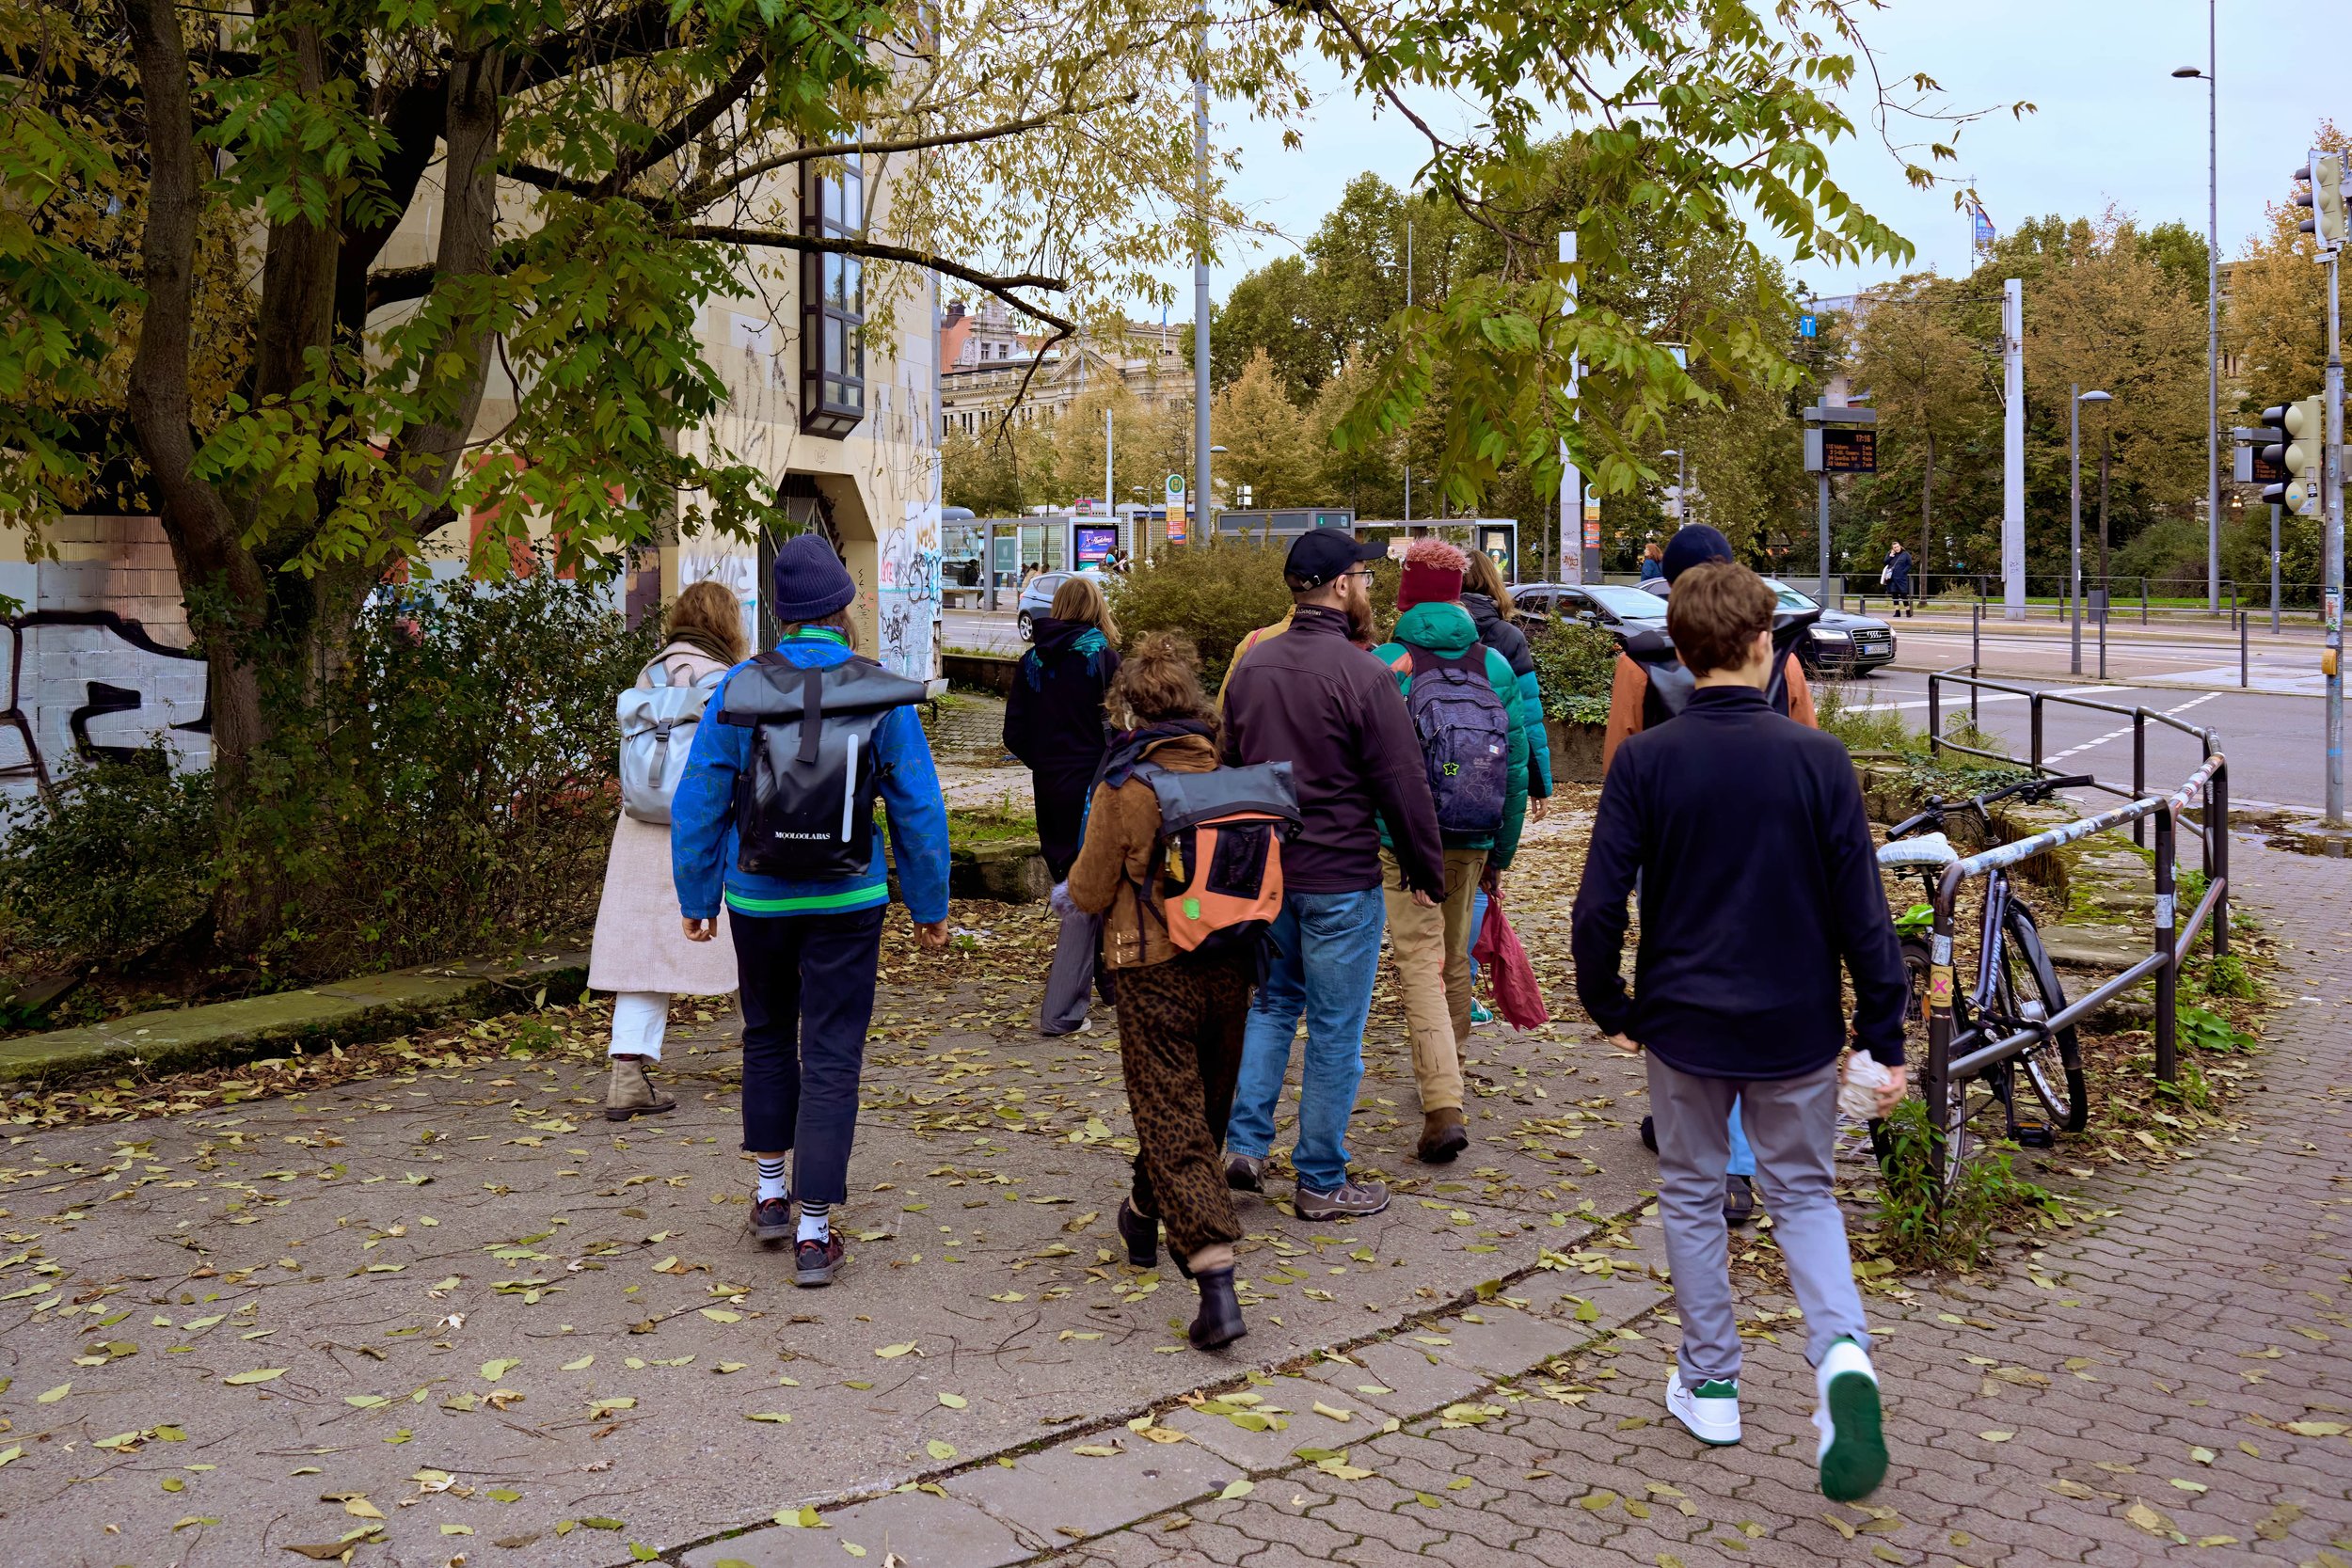 Die Teilnehmenden beim Überqueren einer Straße. Foto: Laura Wichmann/Universität Leipzig.